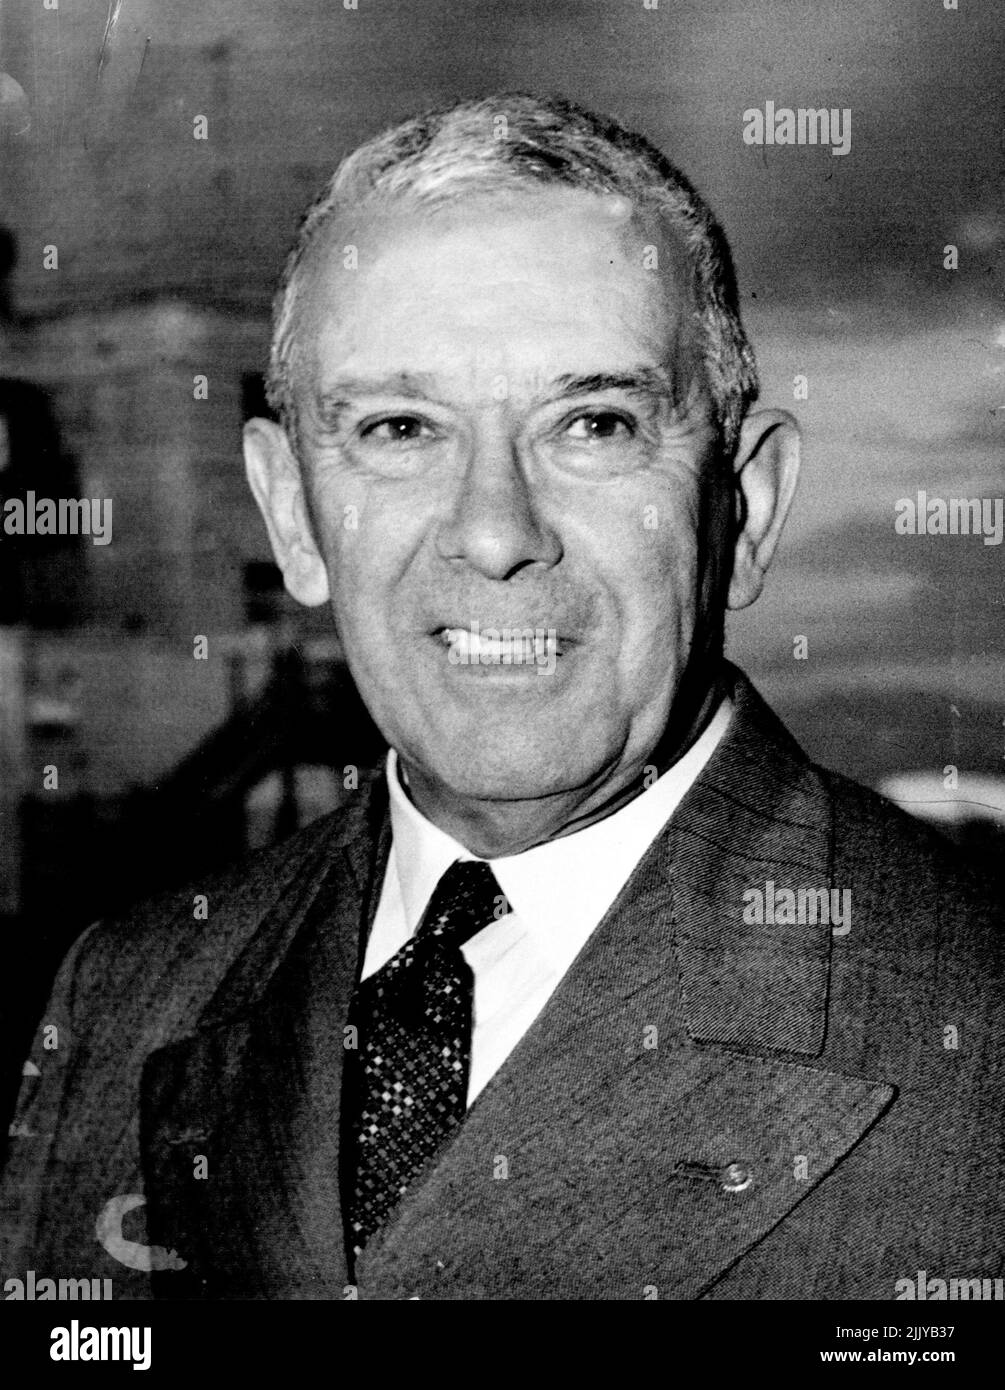 P. A. Strato-Klipper Angus Mitchell kehrte von der Rotary Convention in Atlantic City & R. Assembly at Lake Plated zurück. Er war Präsident 1948-49 ist nun ein ehemaliger Präsident von Rotary International. 02. Juni 1951. Stockfoto